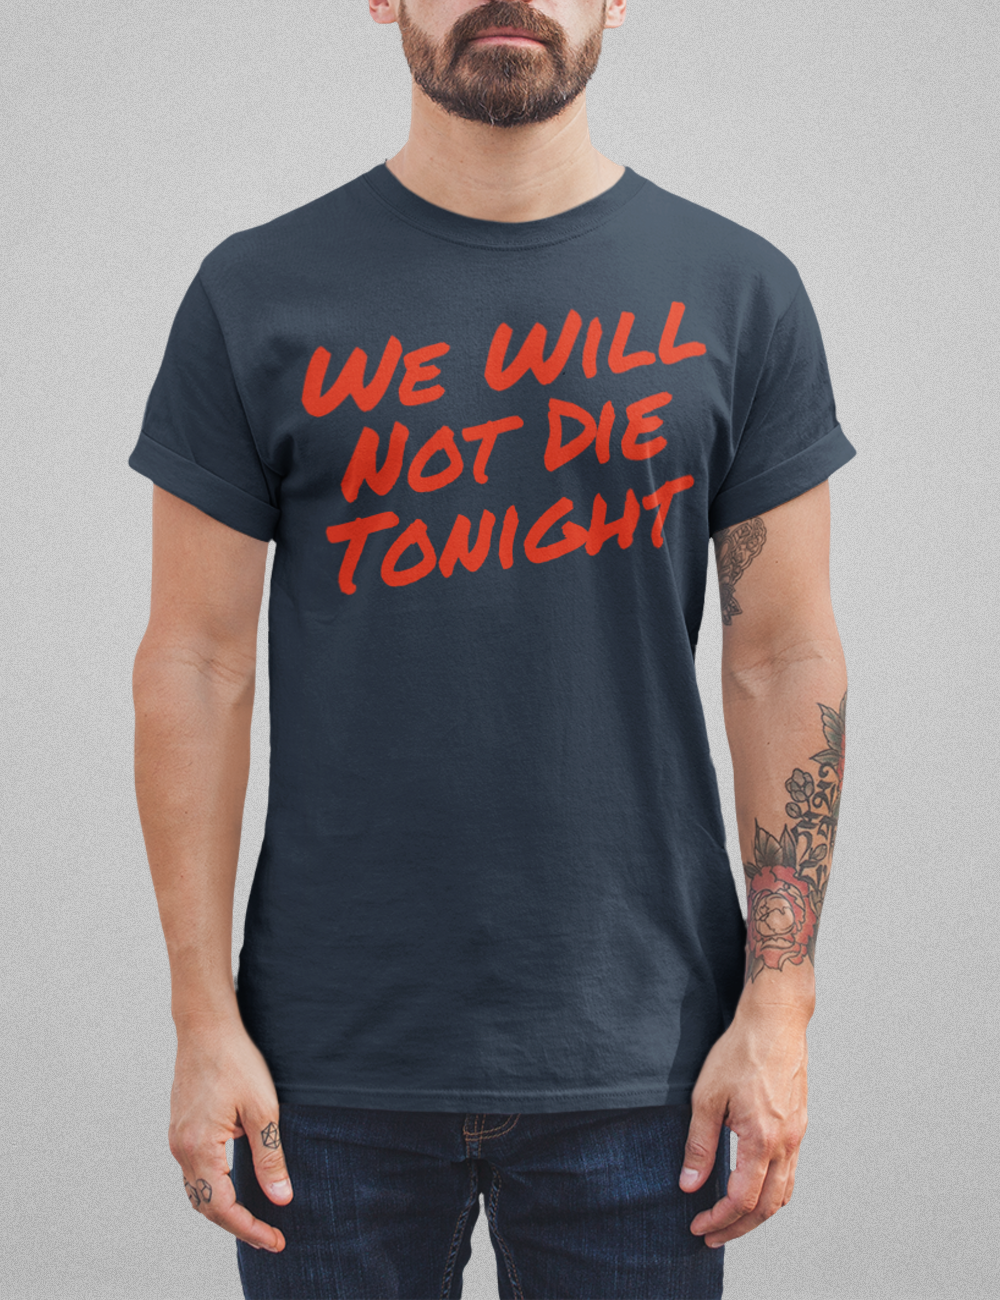 We Will Not Die Tonight T-Shirt OniTakai